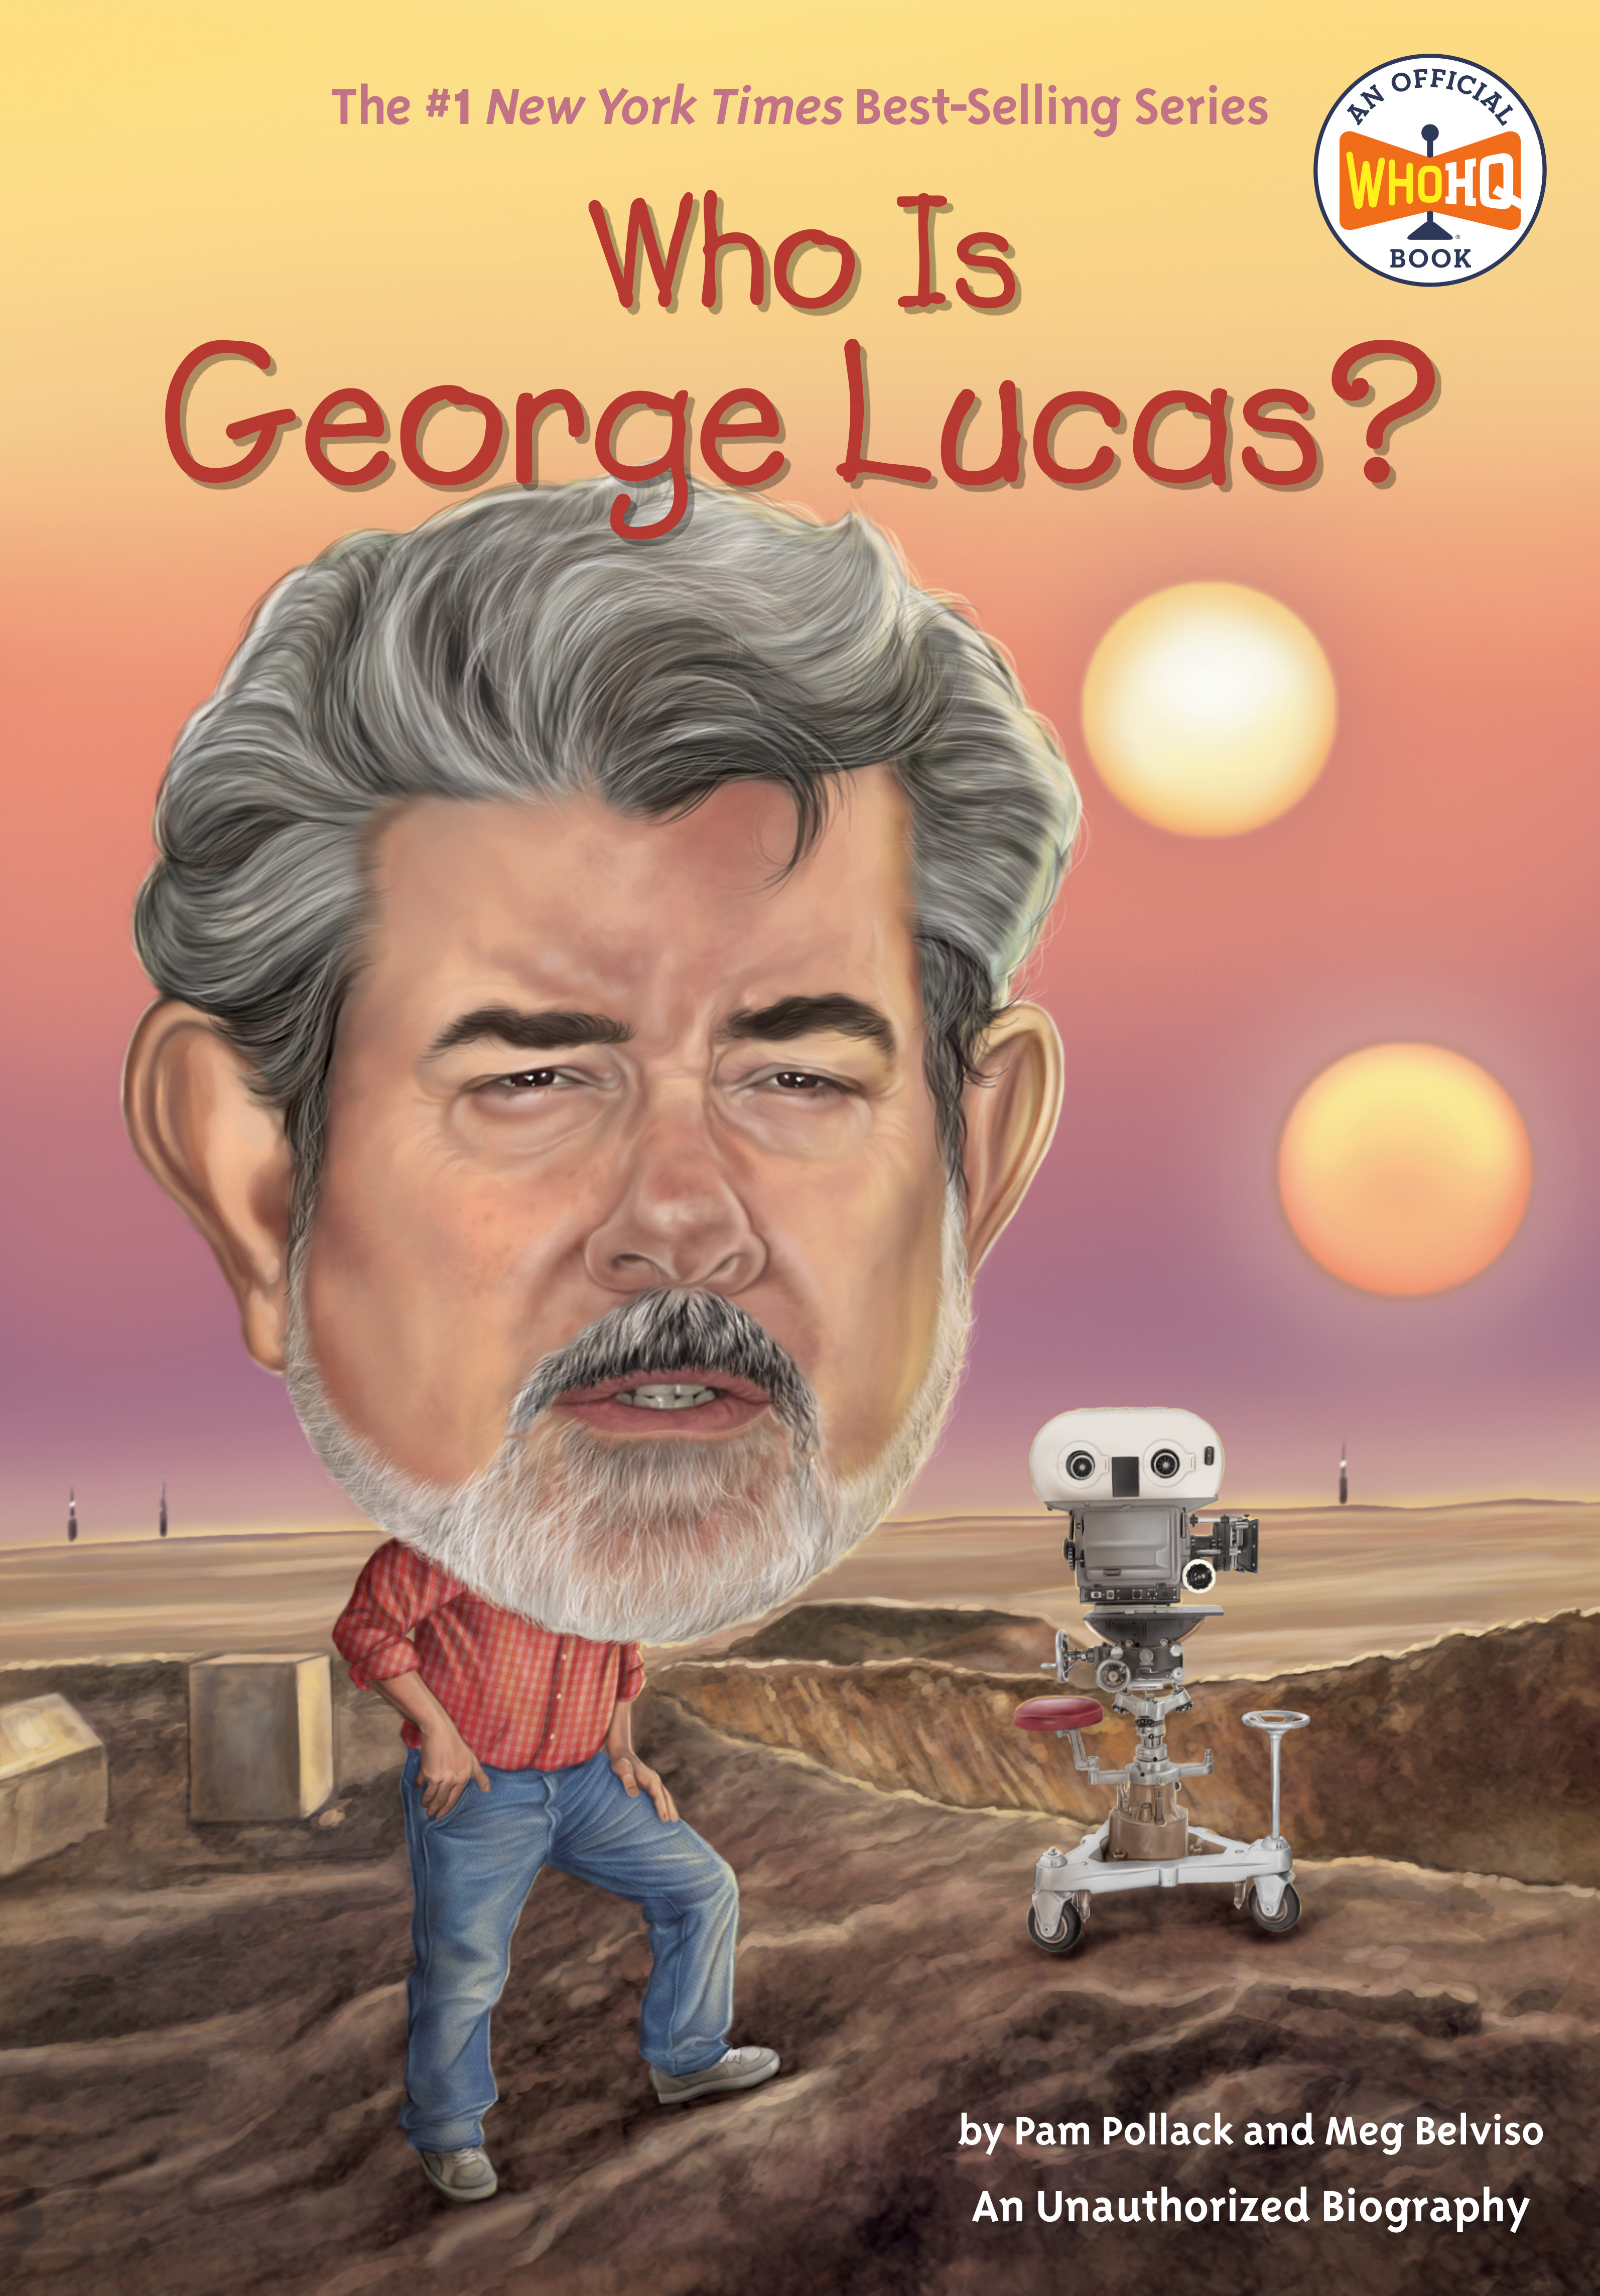 Who Is George Lucas? | Pollack, Pam (Auteur) | Belviso, Meg (Auteur) | Hammond, Ted (Illustrateur)